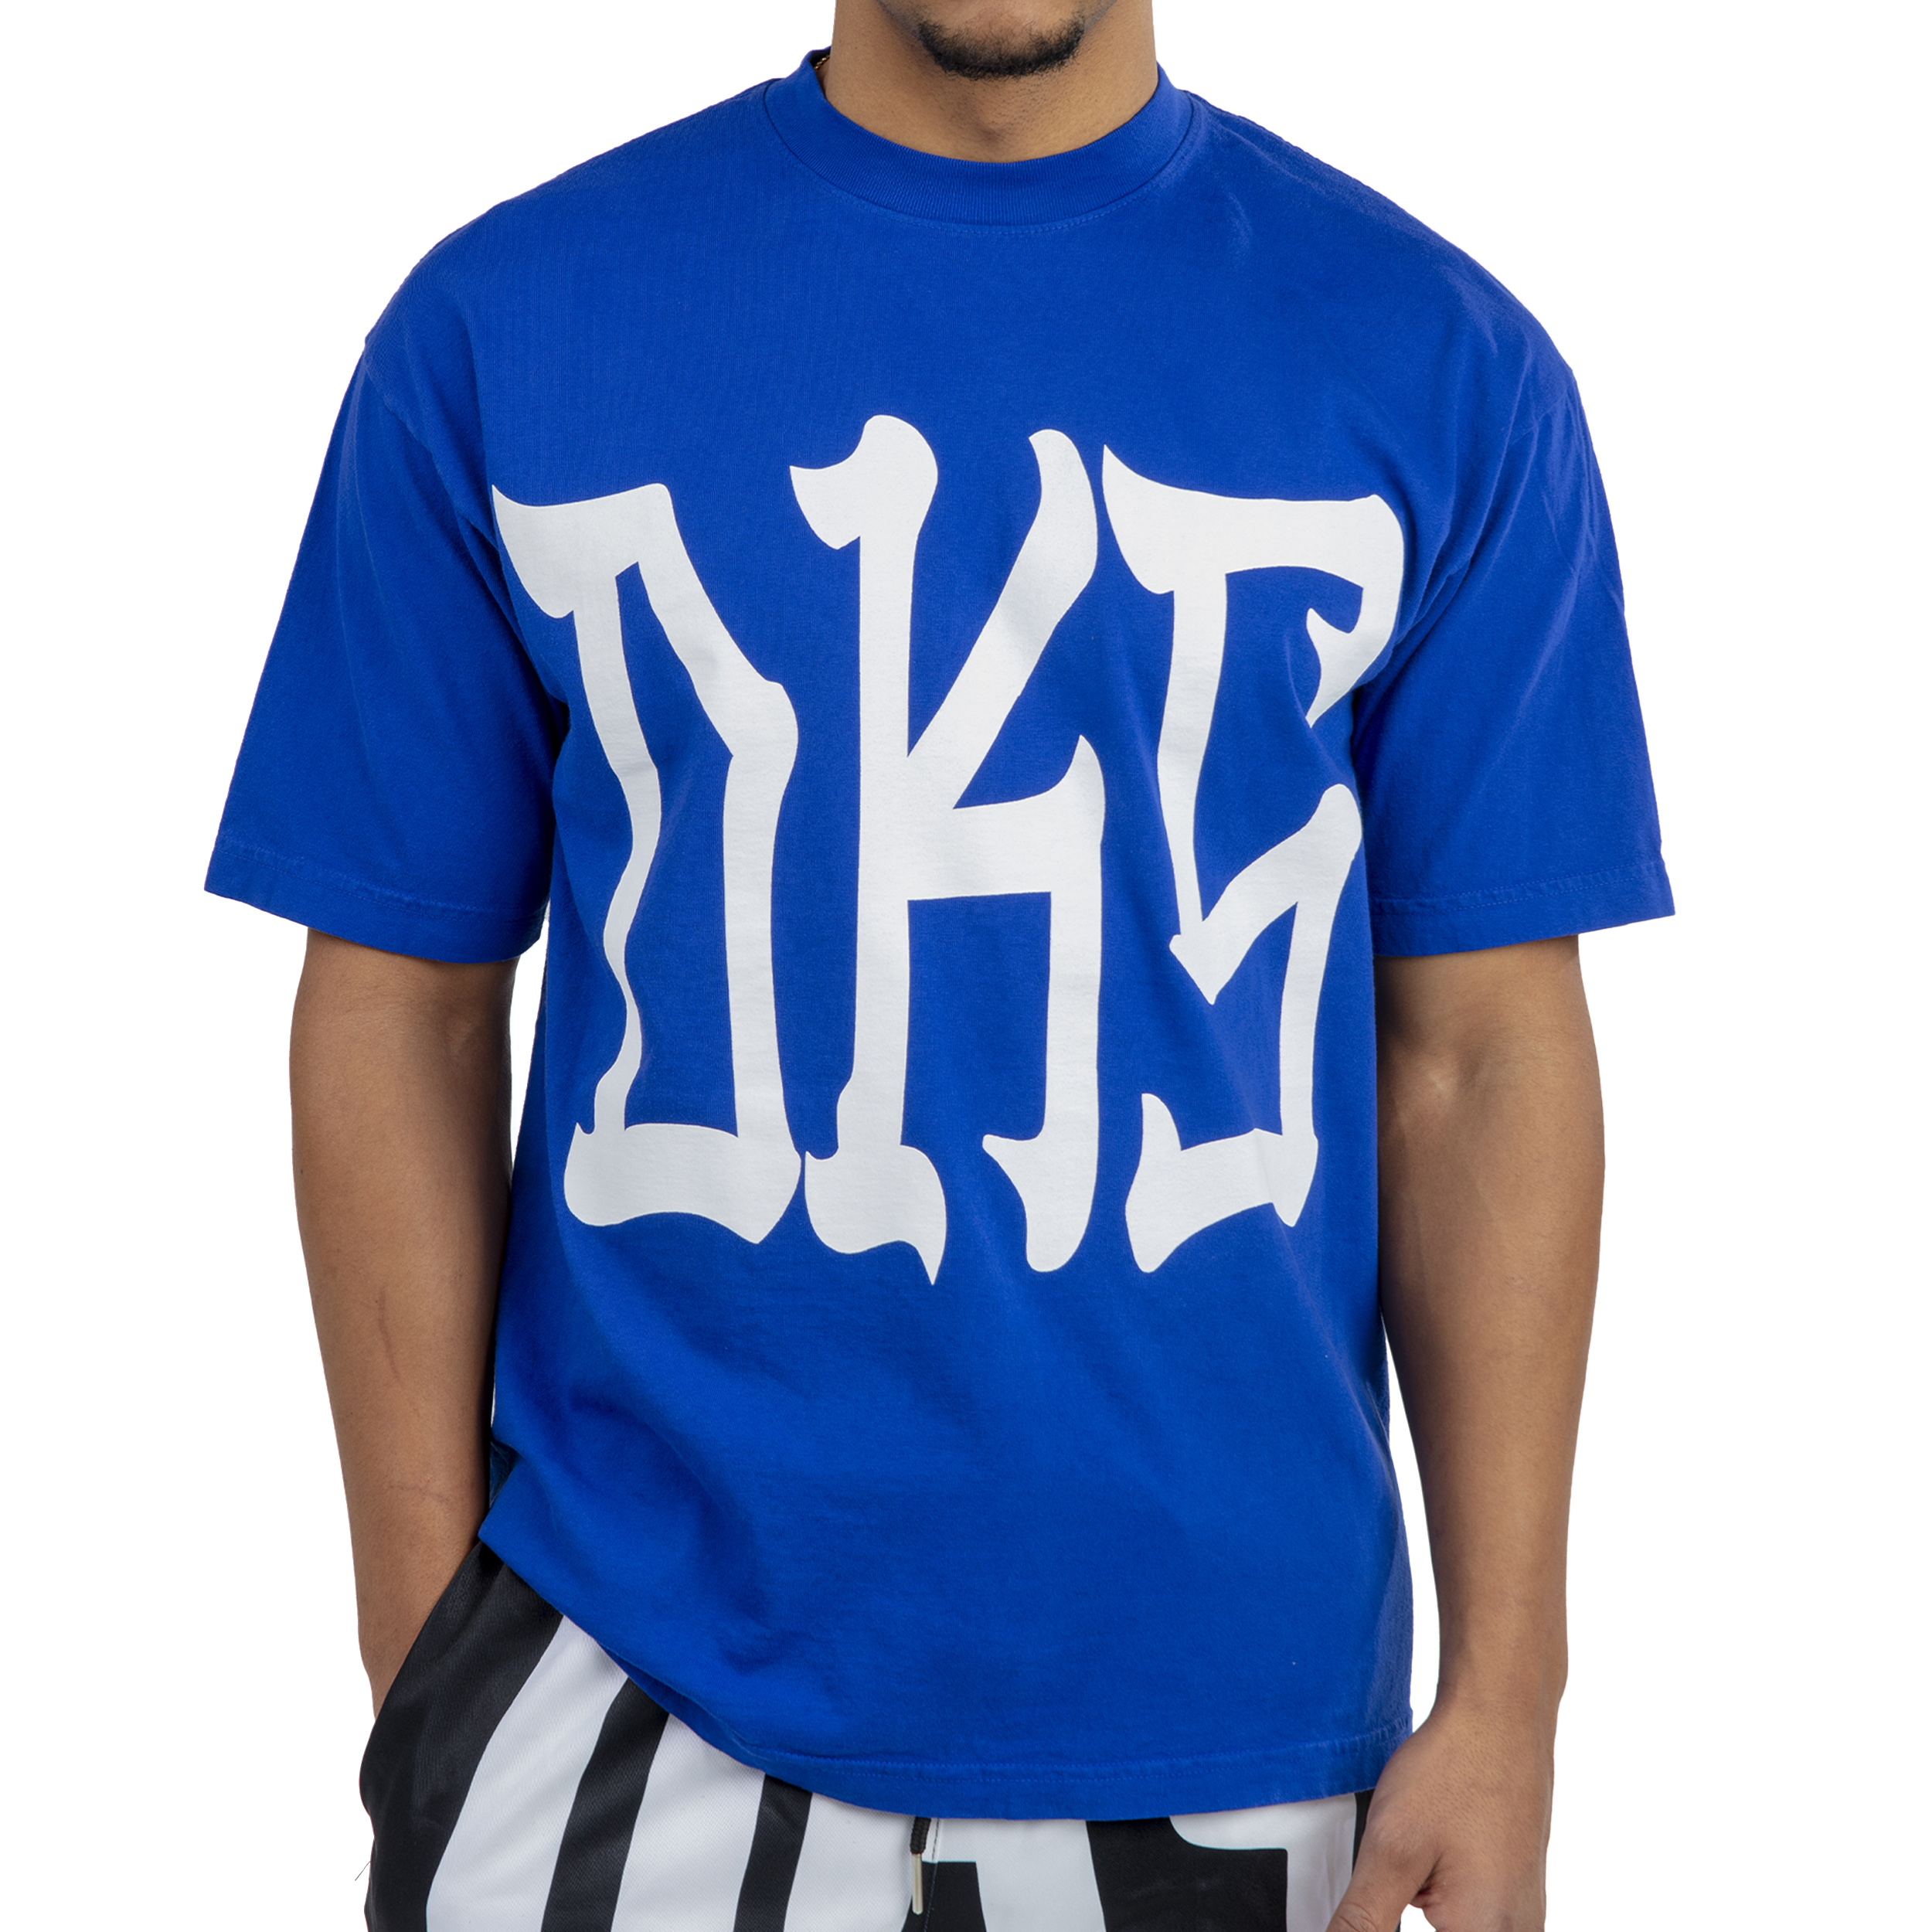 DKS "Blue OG" T-Shirt